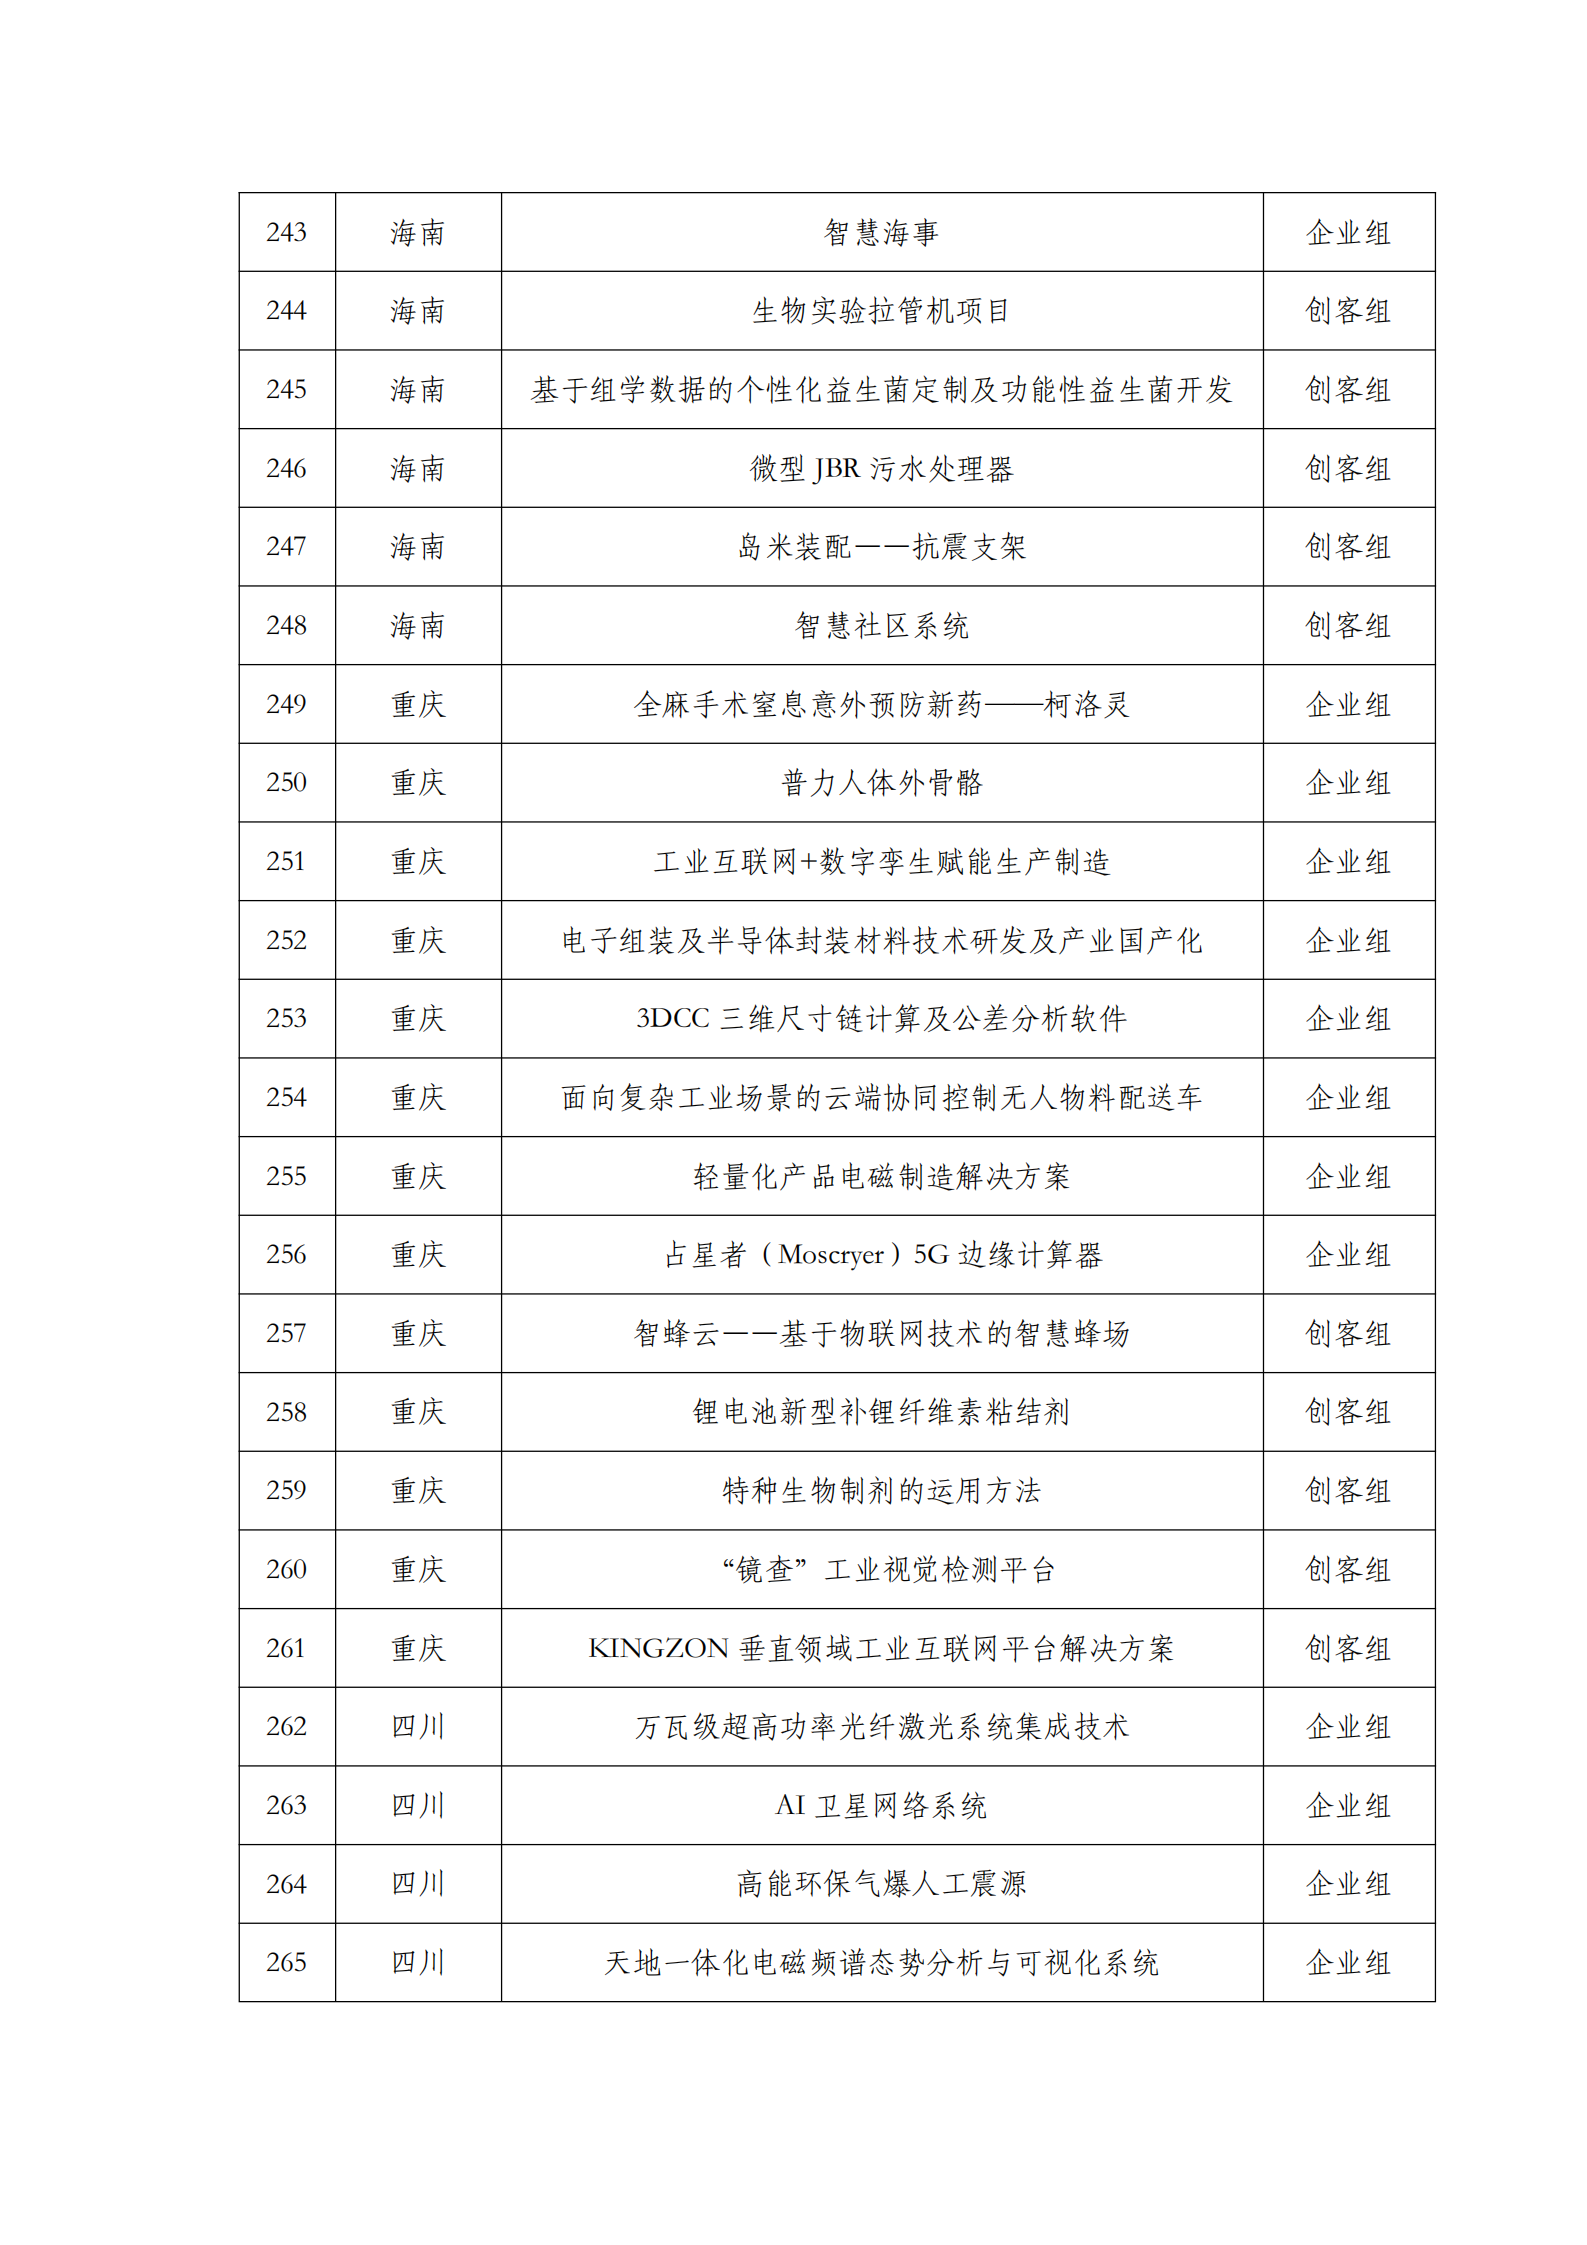 第六届“创客中国”中小企业创新创业大赛500强公示名单_11.png